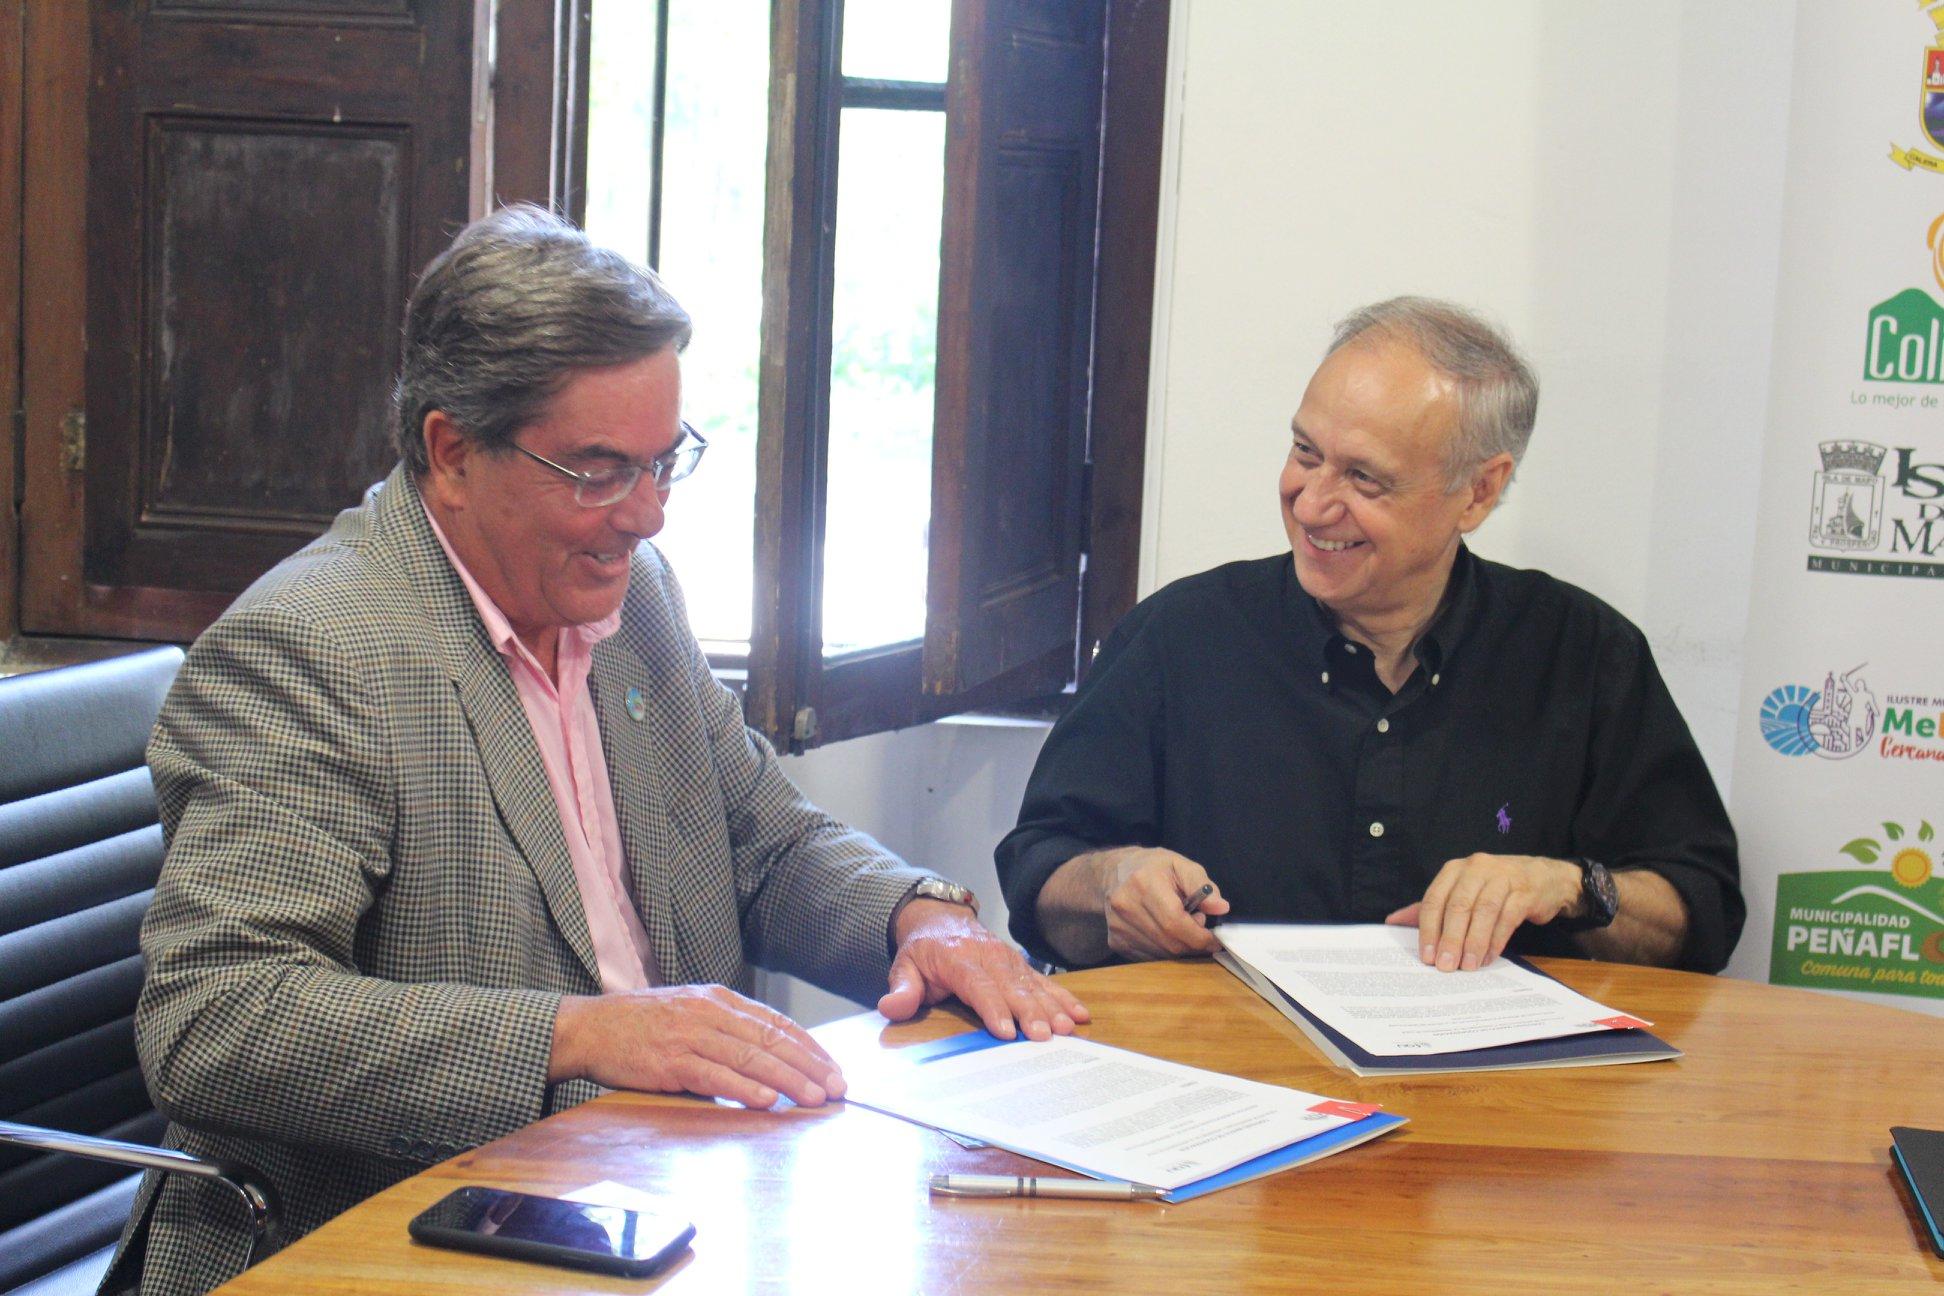 El alcalde de Pirque, Cristian Balmaceda, se reunió con el Decano Manuel Amaya en representación de la Asociación de Municipios Rurales de la Región Metropolitana.